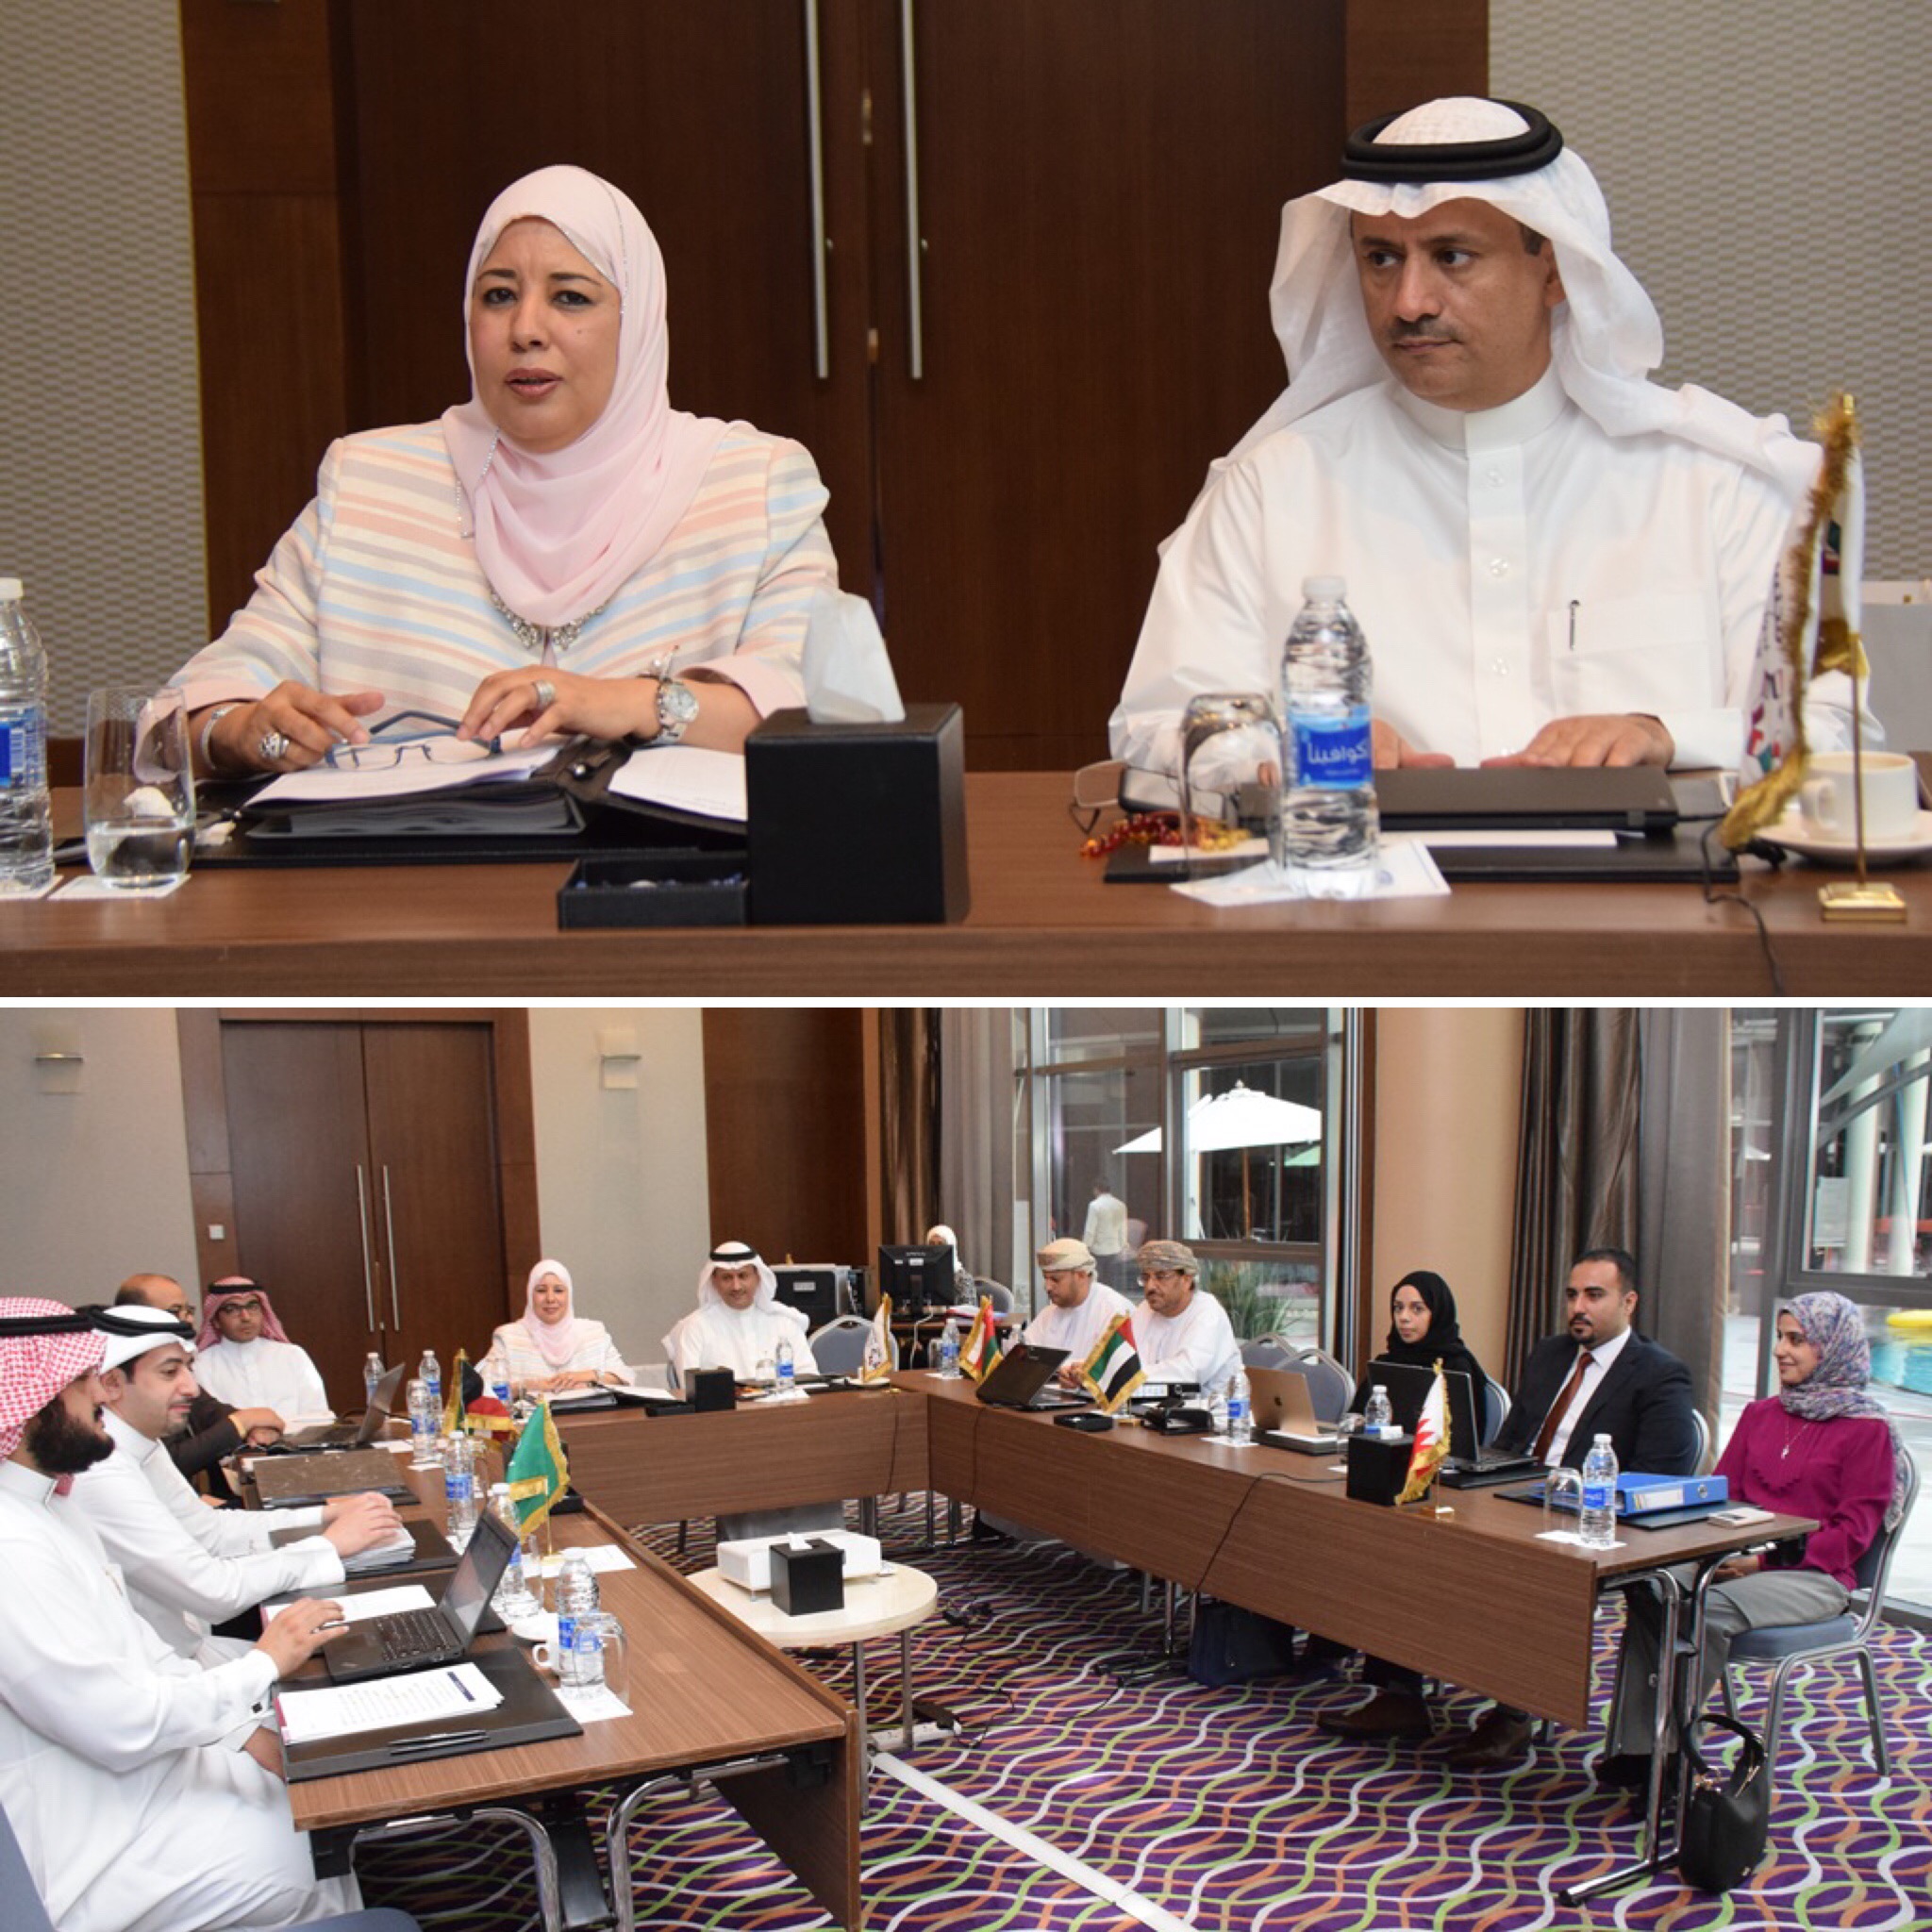 اللجنة الخليجية المركزية للتسجيل الدوائي تعقد إجتماعها الثاني والثمانون